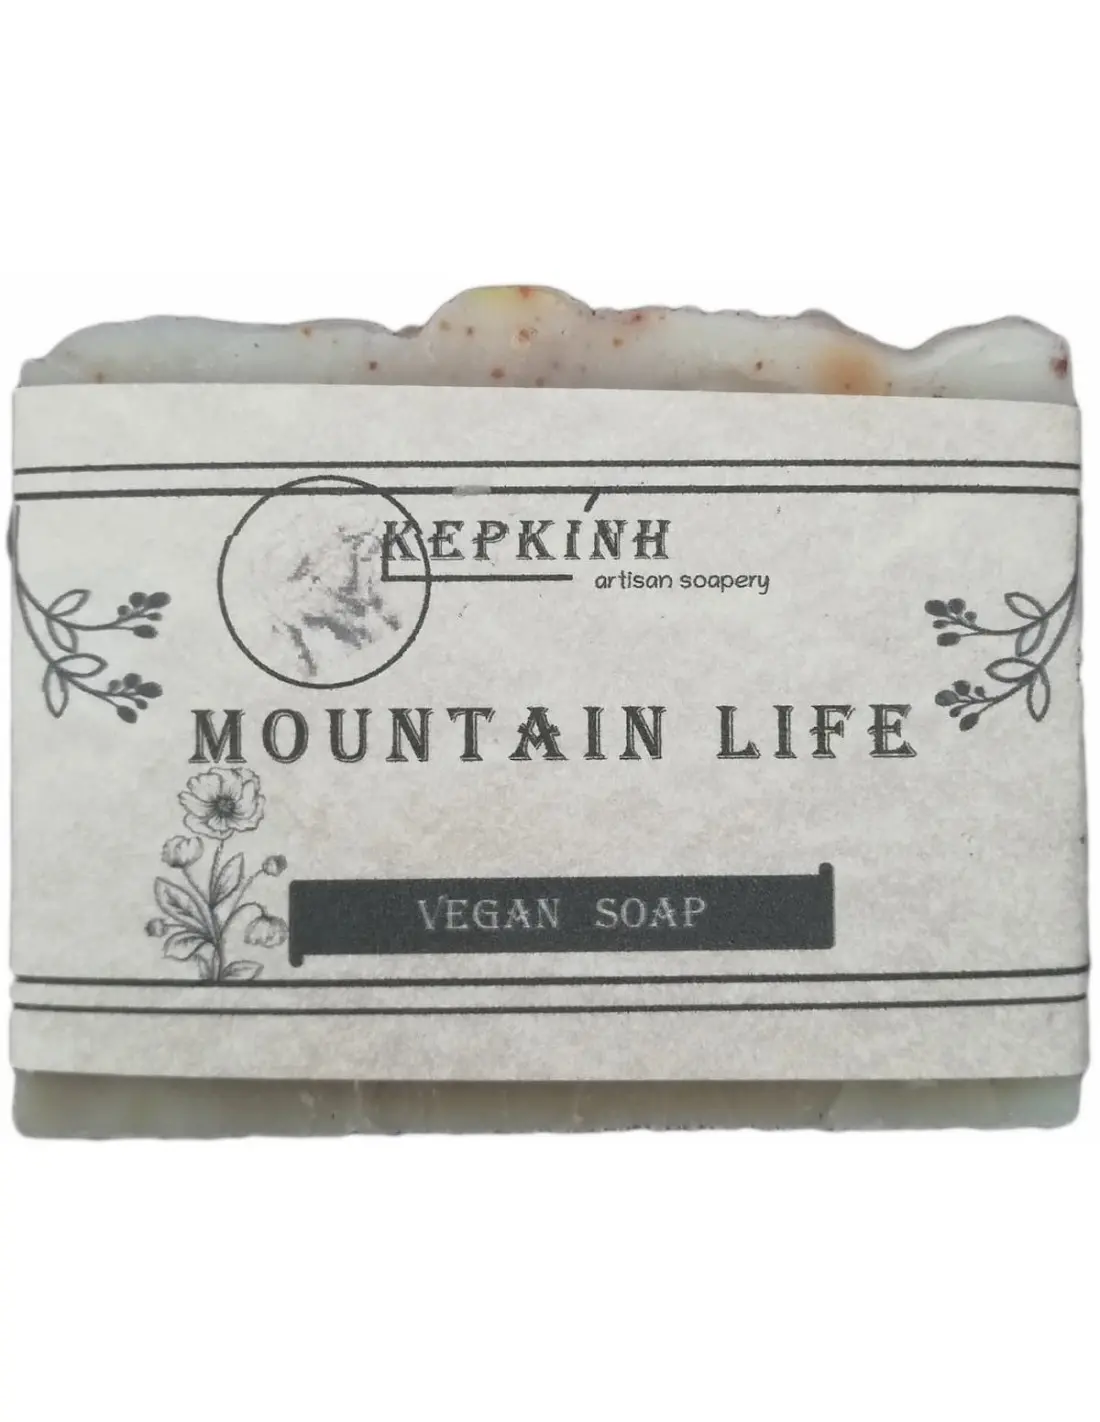 ΚΕΡΚΙΝΗ Σαπούνι Σώματος Vegan Mountain Life 150gr